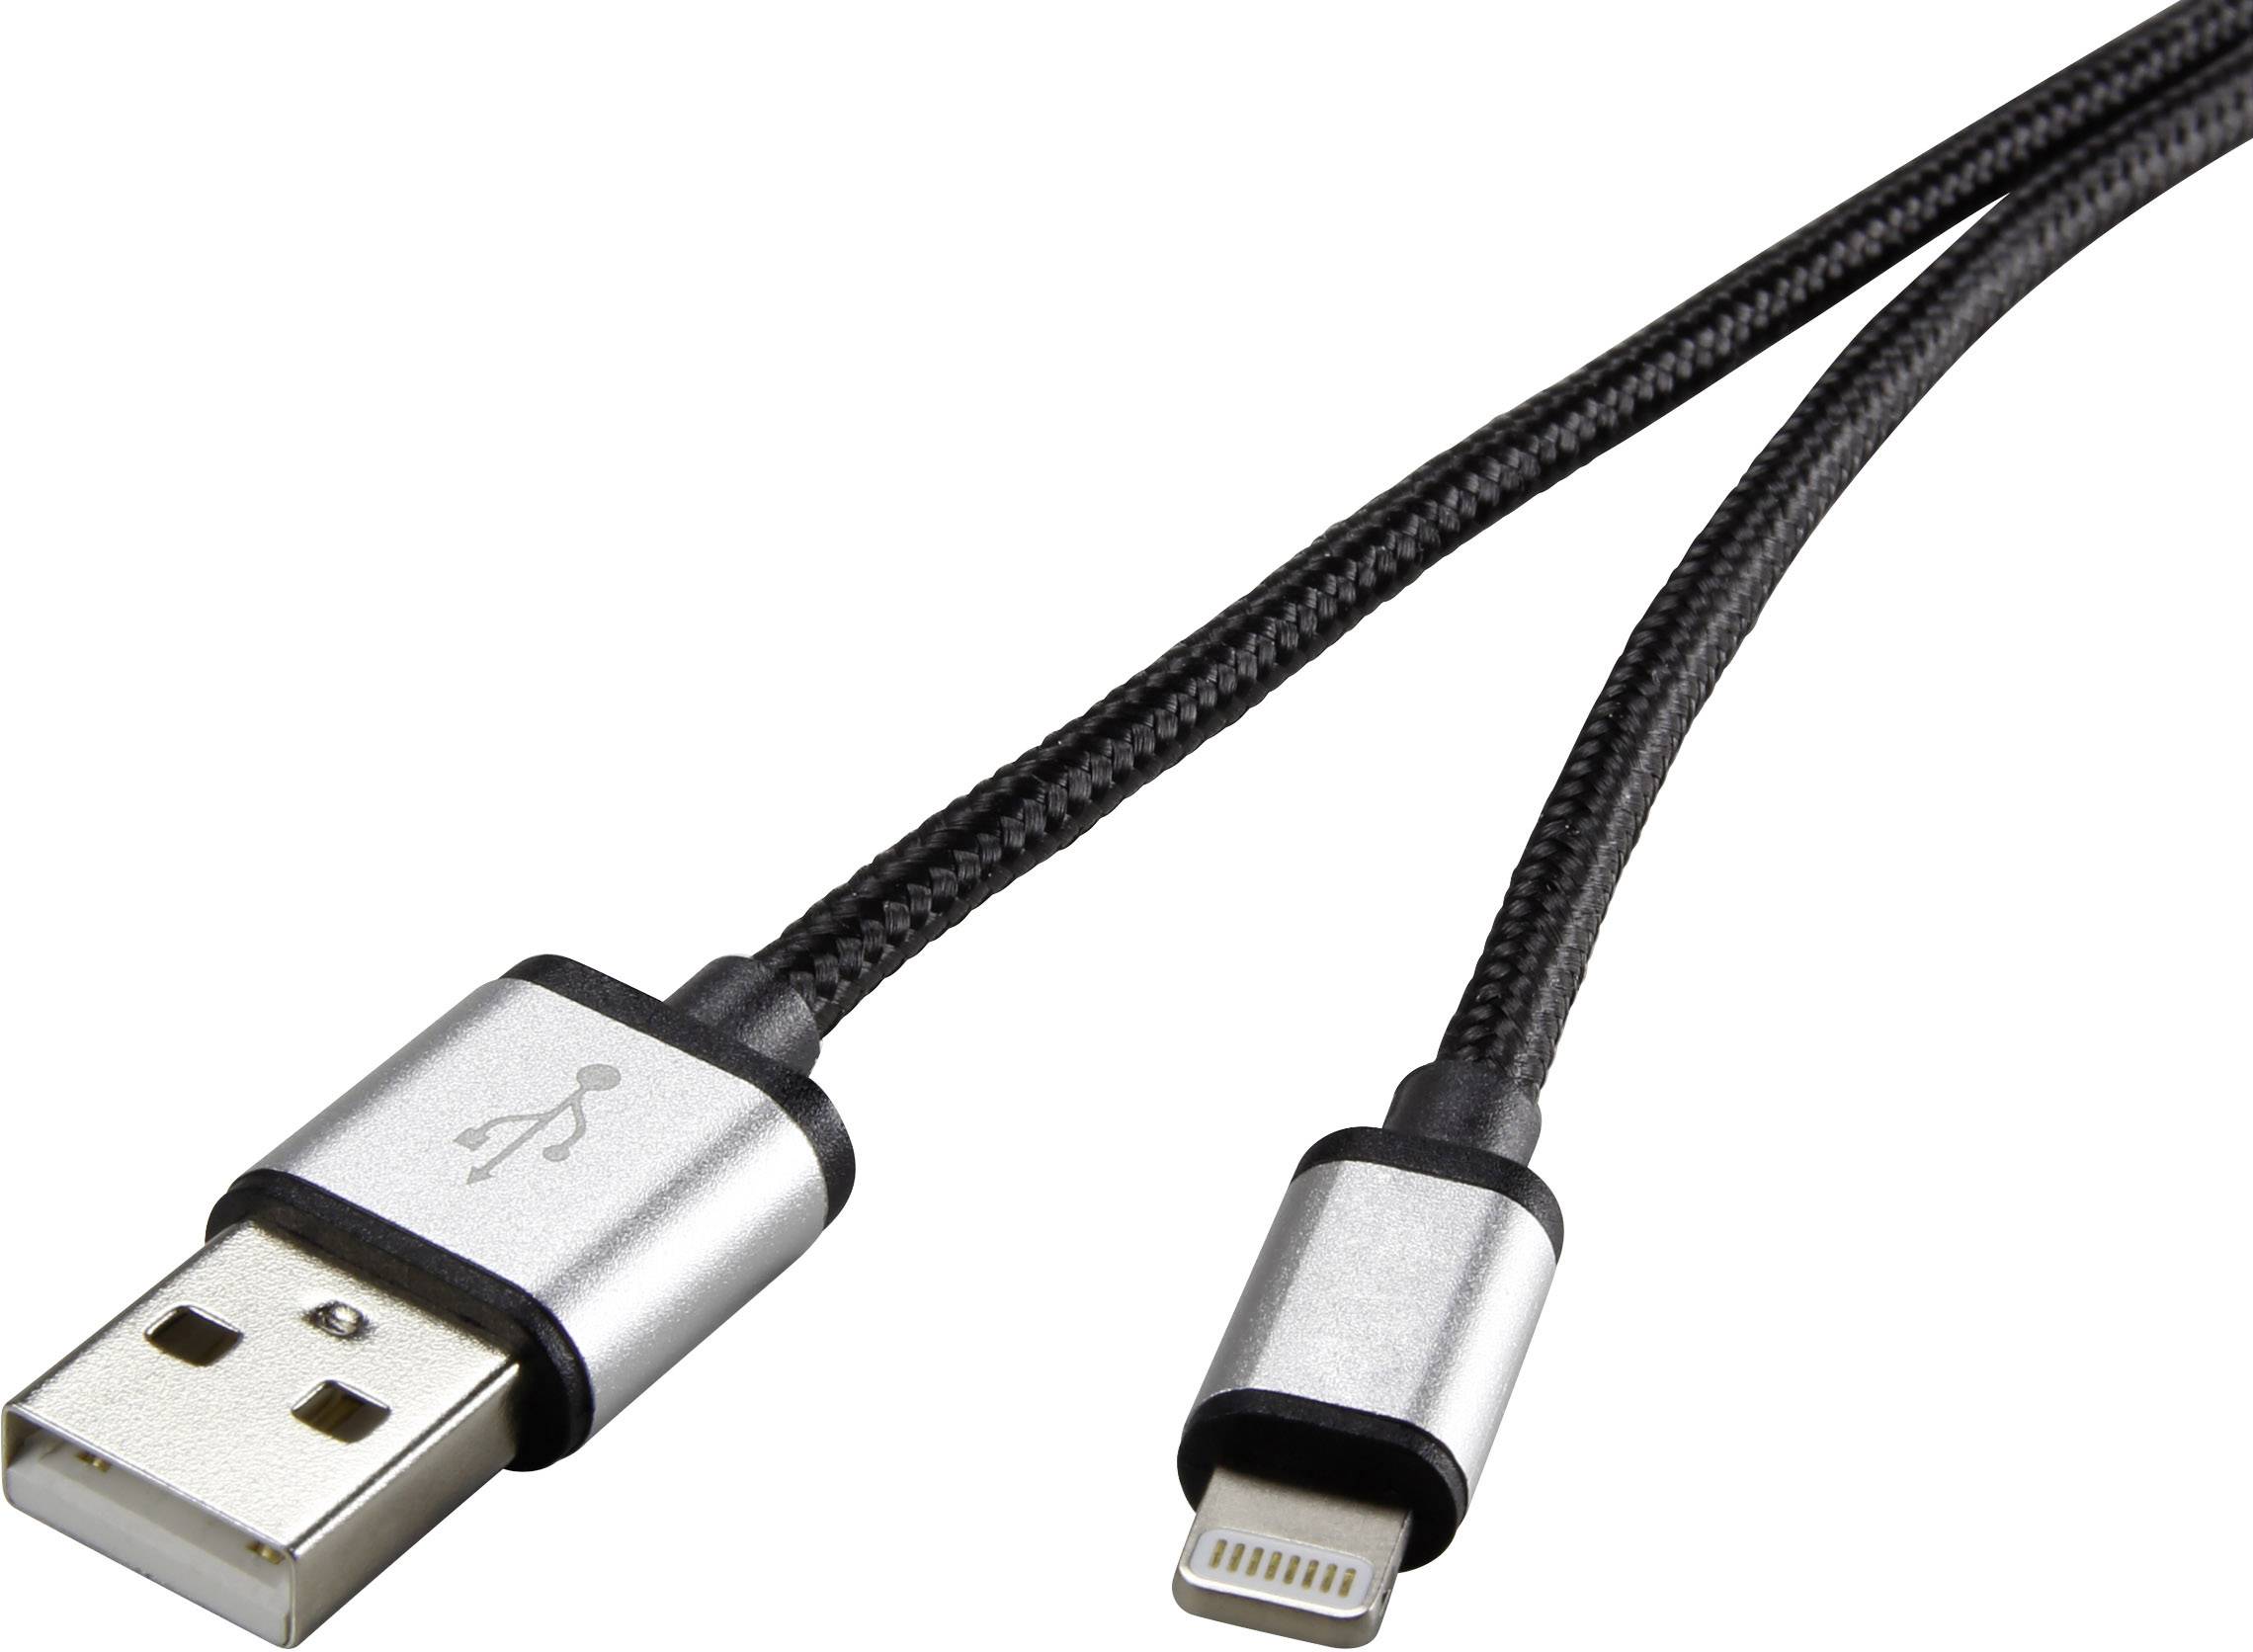 CONRAD Renkforce USB 2.0 Anschlusskabel [1x USB 2.0 Stecker A - 1x Apple Dock-Stecker Lightning] 0.5